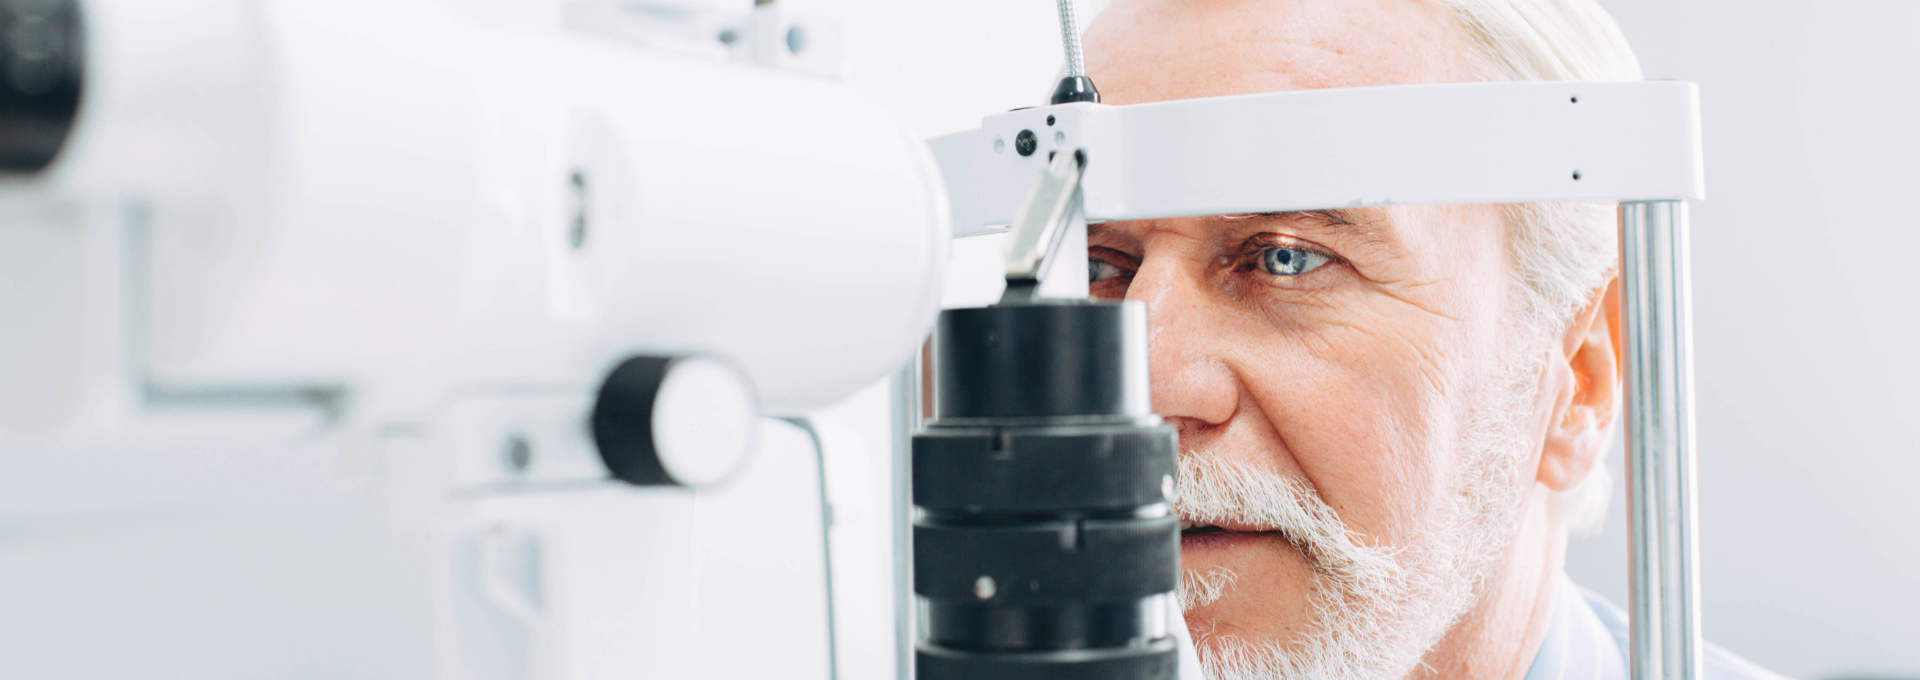 Diapositiva de la categoría de productos de diagnóstico ocular EYESFIRST®